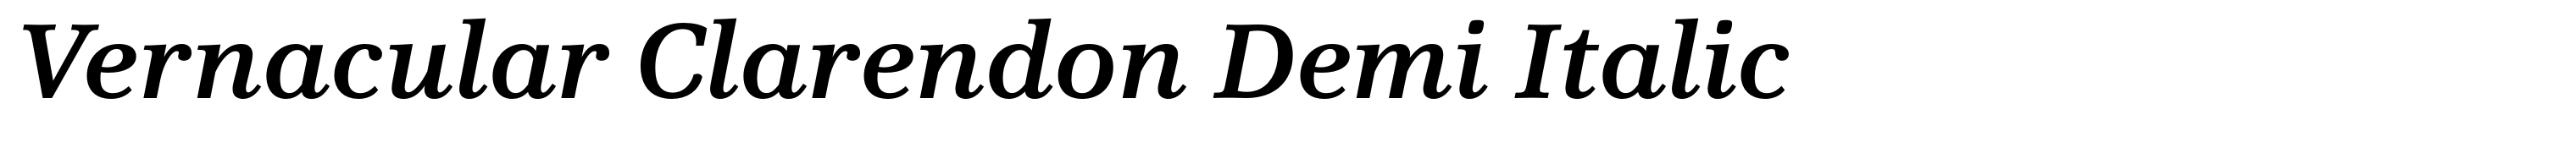 Vernacular Clarendon Demi Italic